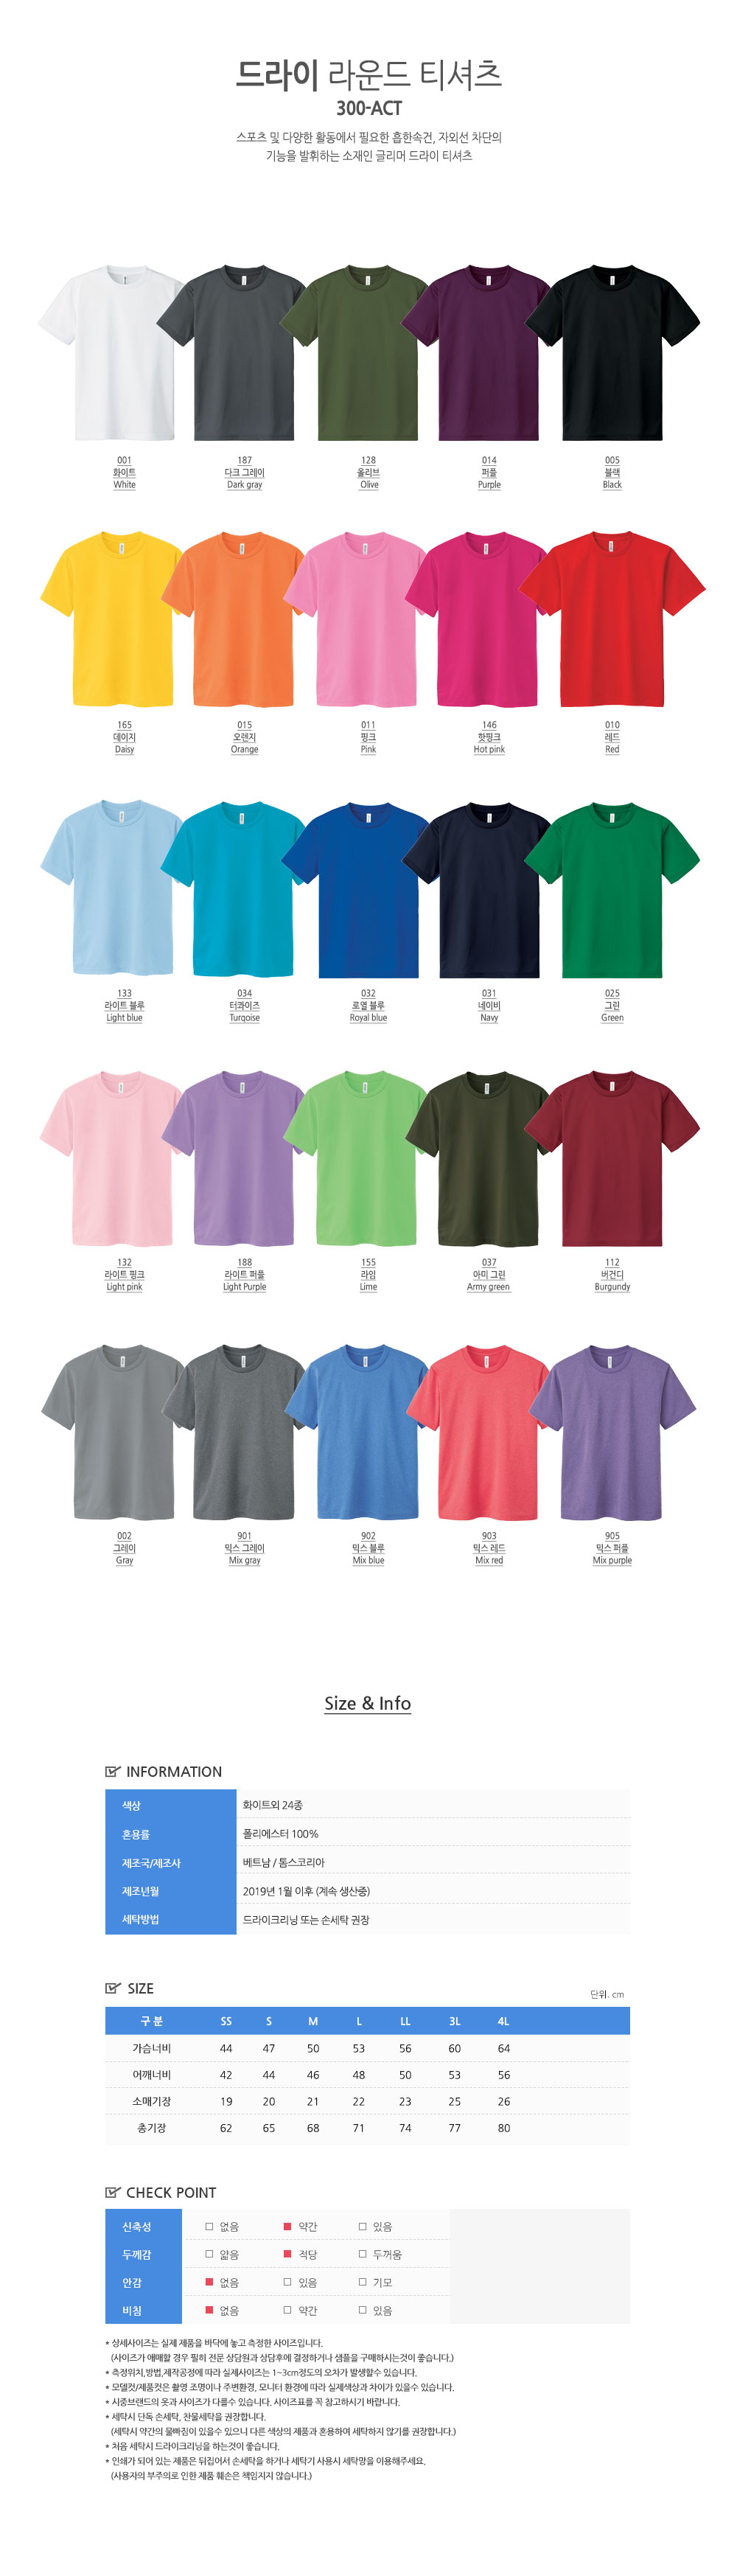 드라이 라운드 티셔츠 8,900원 - 티티뱅크 패션의류, 남성상의, 반팔티, 라운드넥티셔츠 바보사랑 드라이 라운드 티셔츠 8,900원 - 티티뱅크 패션의류, 남성상의, 반팔티, 라운드넥티셔츠 바보사랑